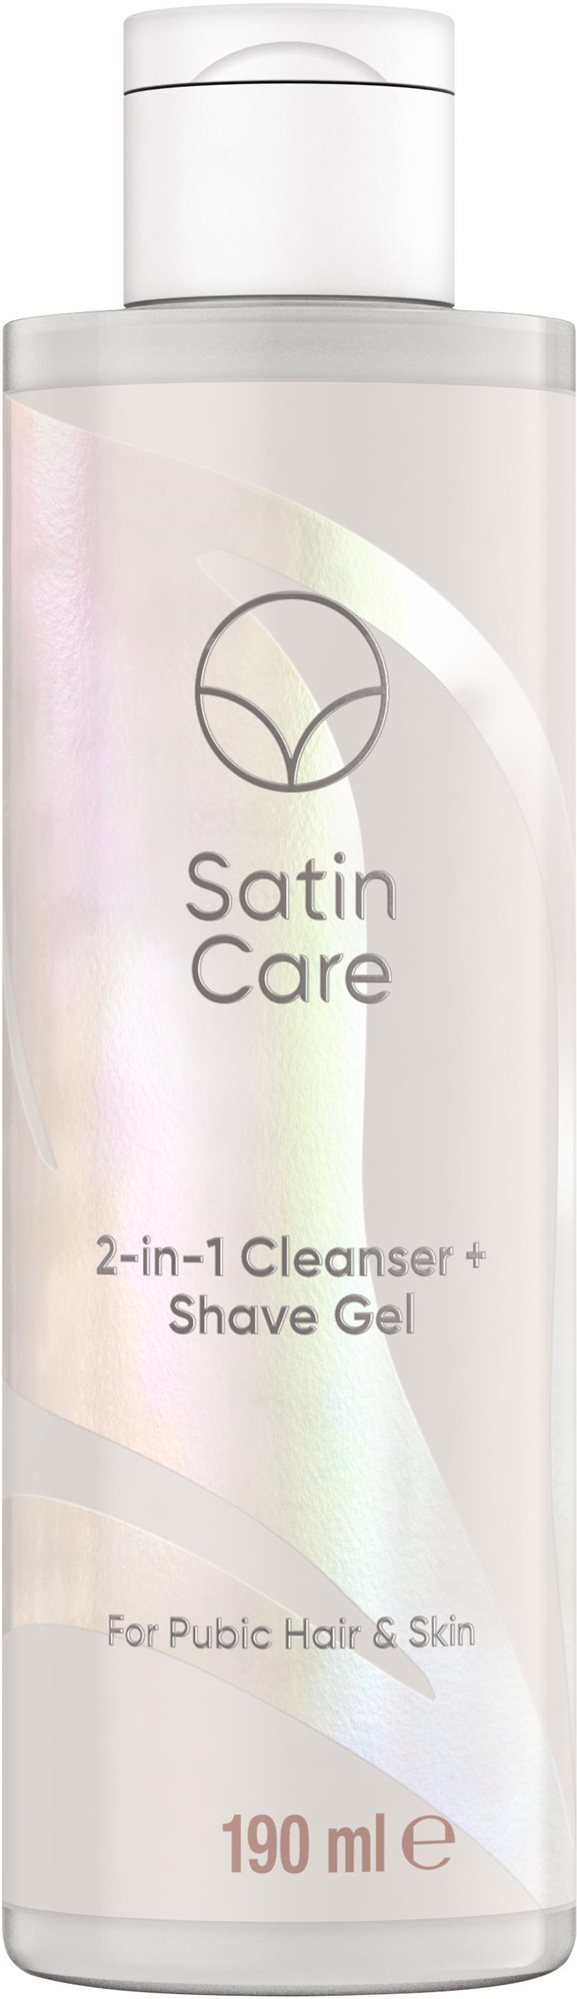 GILLETTE Venus Satin Care 2in1 Cleanser + Shave Gel 190 ml